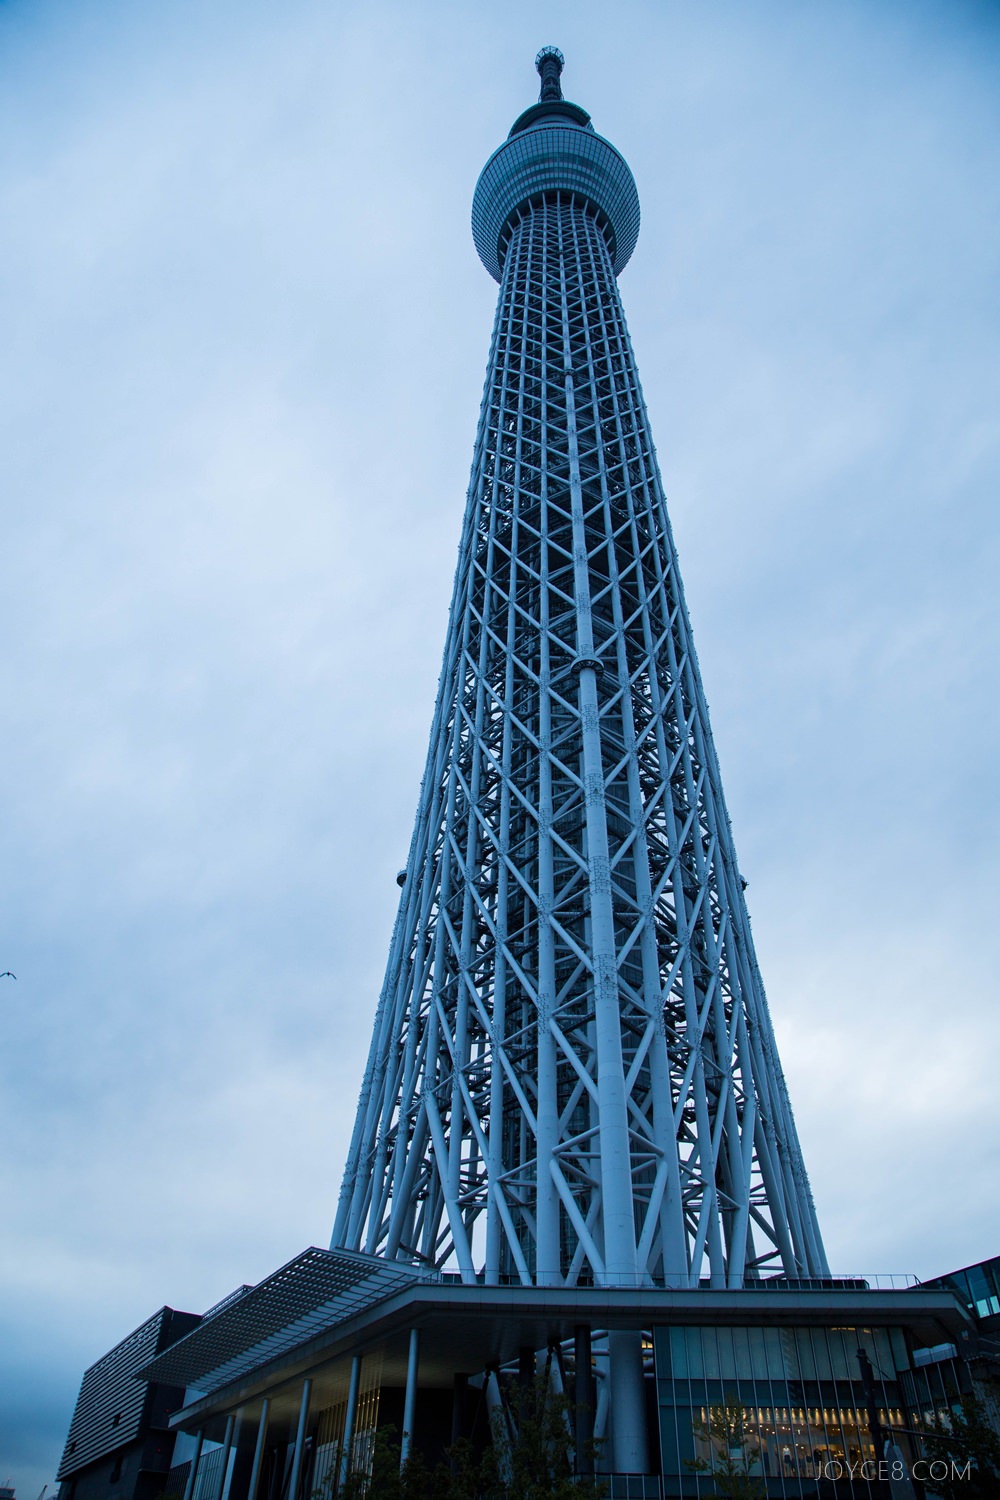 晴空塔,東京晴空塔,tokyo-skytree,晴空塔夜景,天空樹